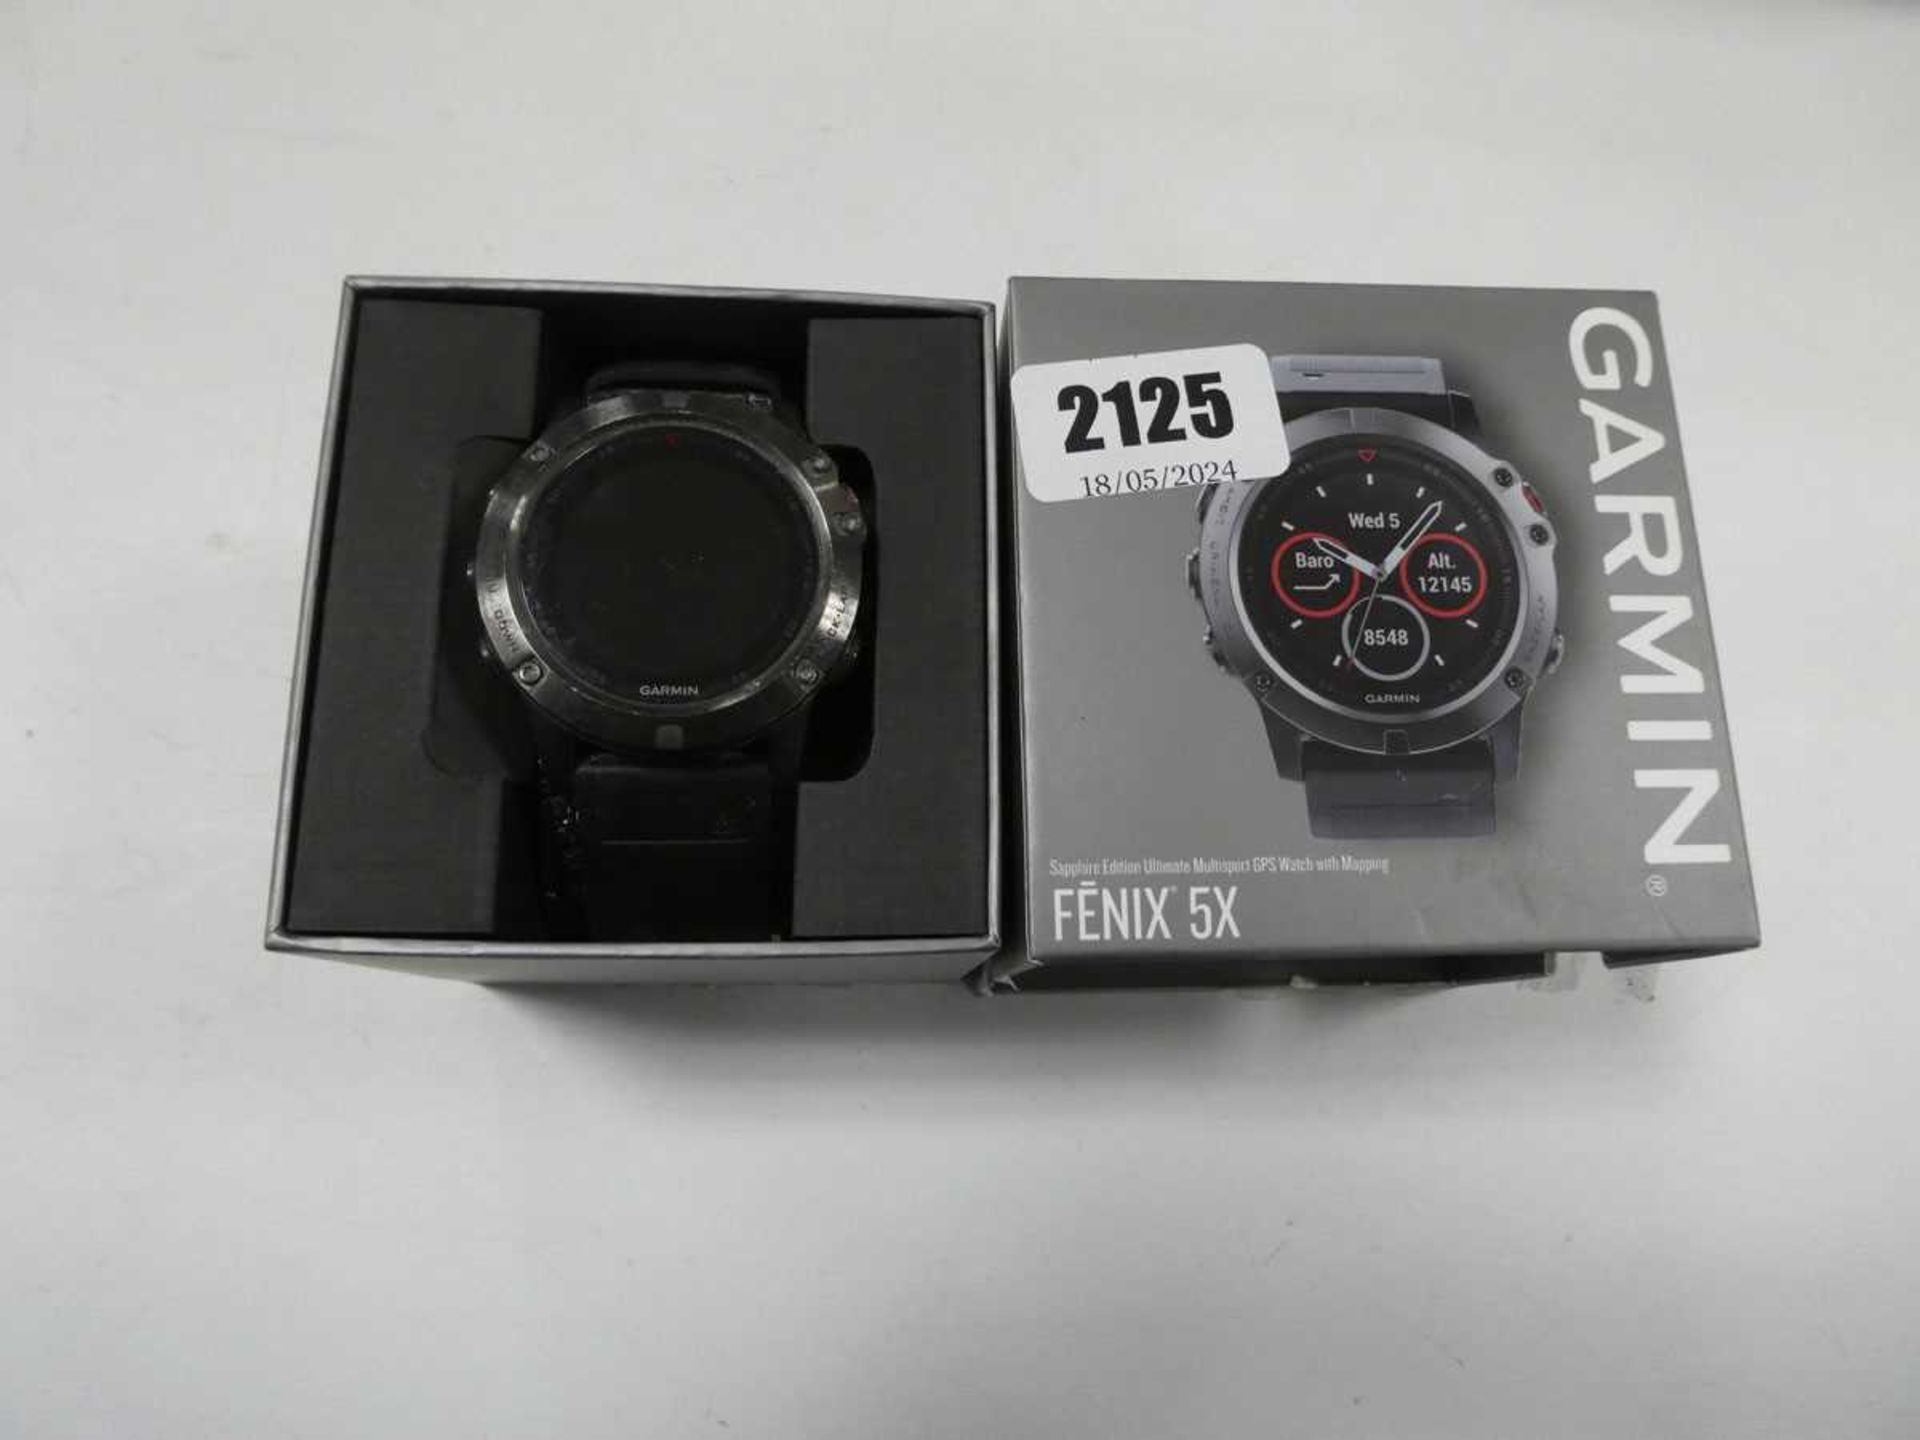 Garmin Fenix 5X watch in case